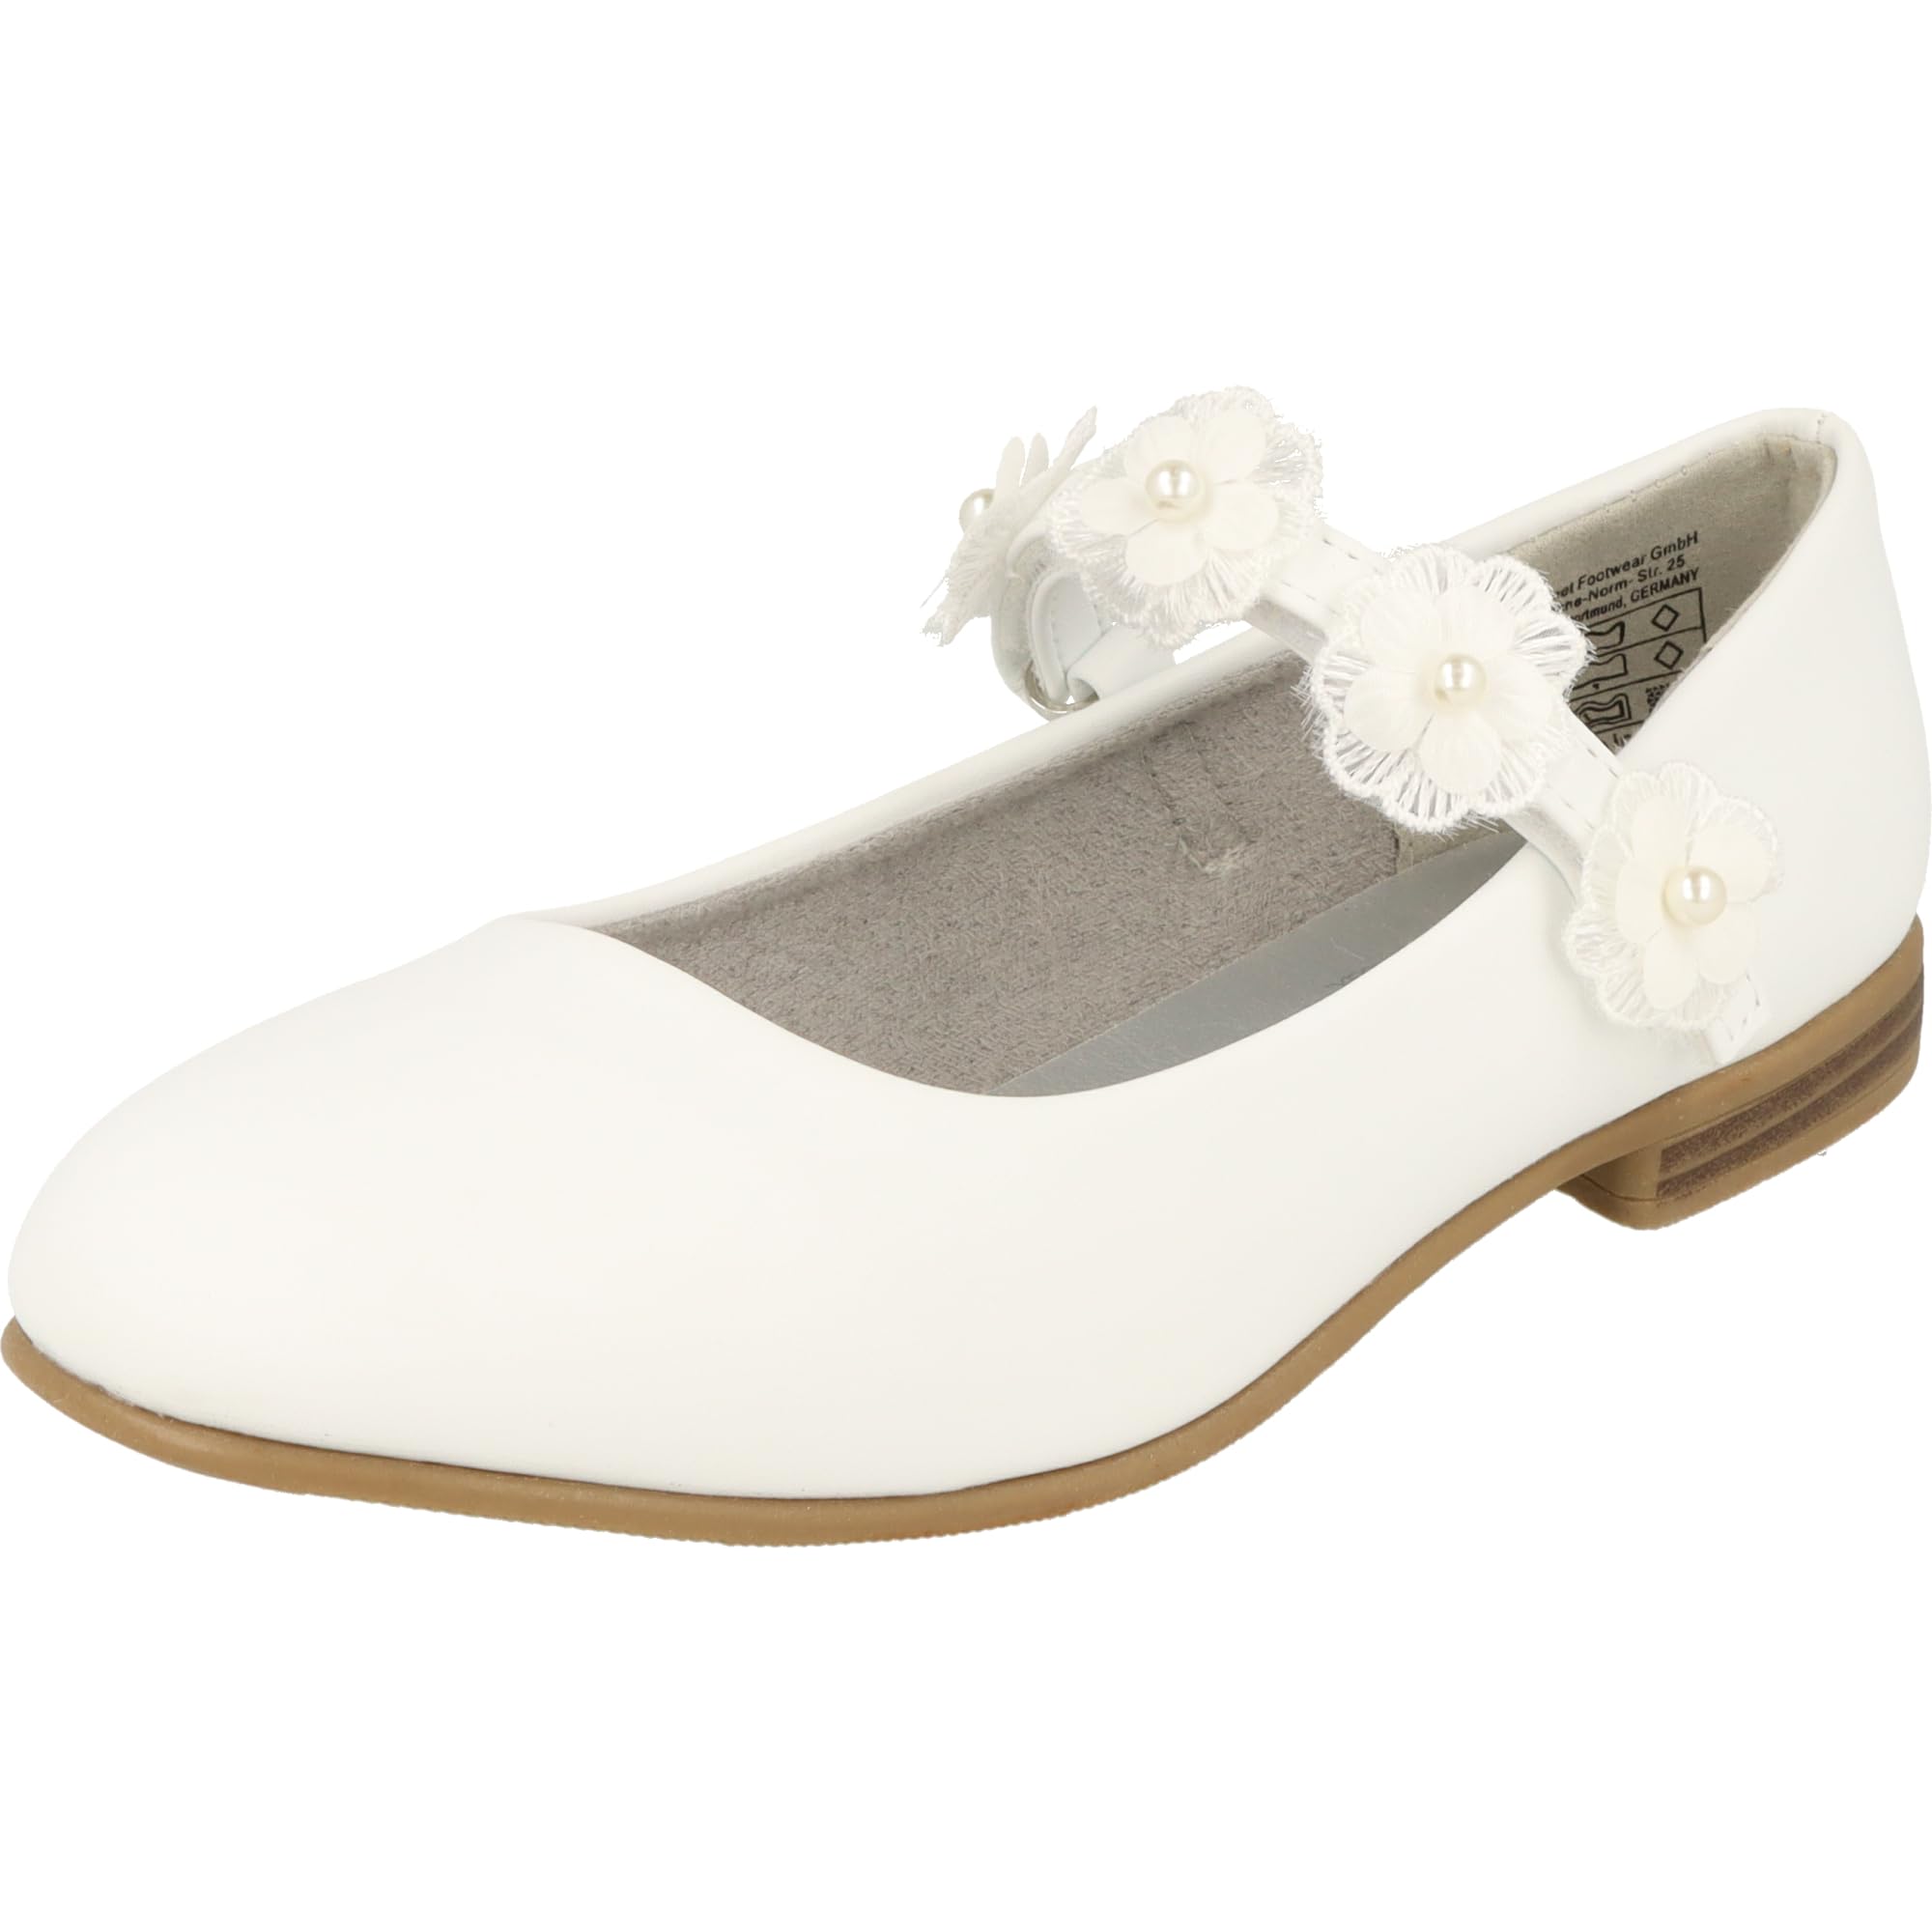 Indigo 424-088 Mädchen Ballerina Schuhe Hochzeit Taufe Konfirmation Klett Blumen Weiß (White, EU Schuhgrößensystem, Jugendliche, Numerisch, M, 35)